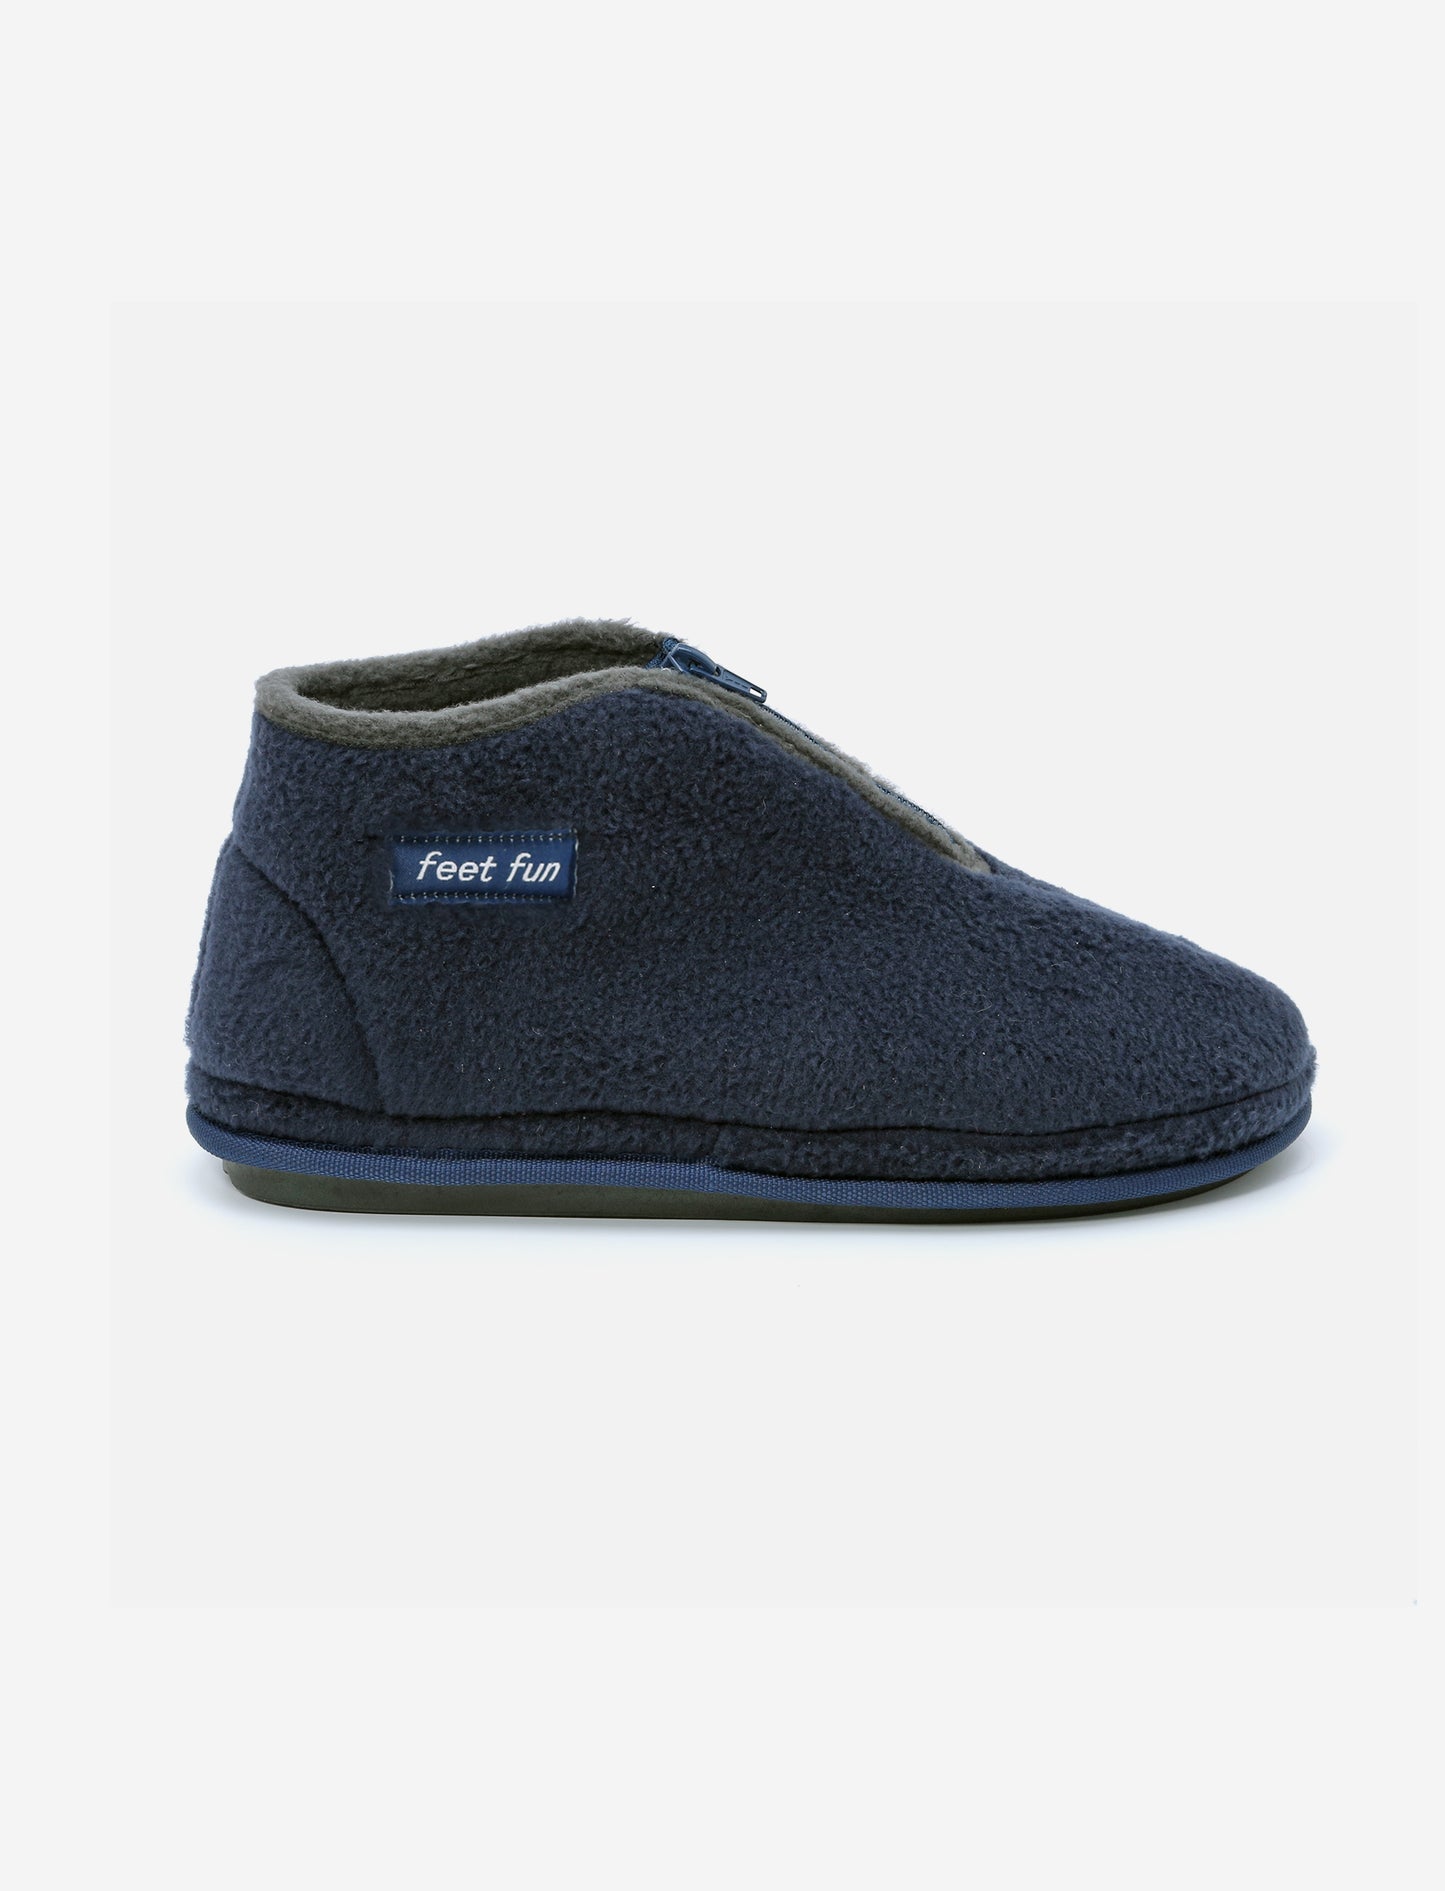 Feet Fun - נעלי בית לגברים  פיט פאן דגם קיפי ליז